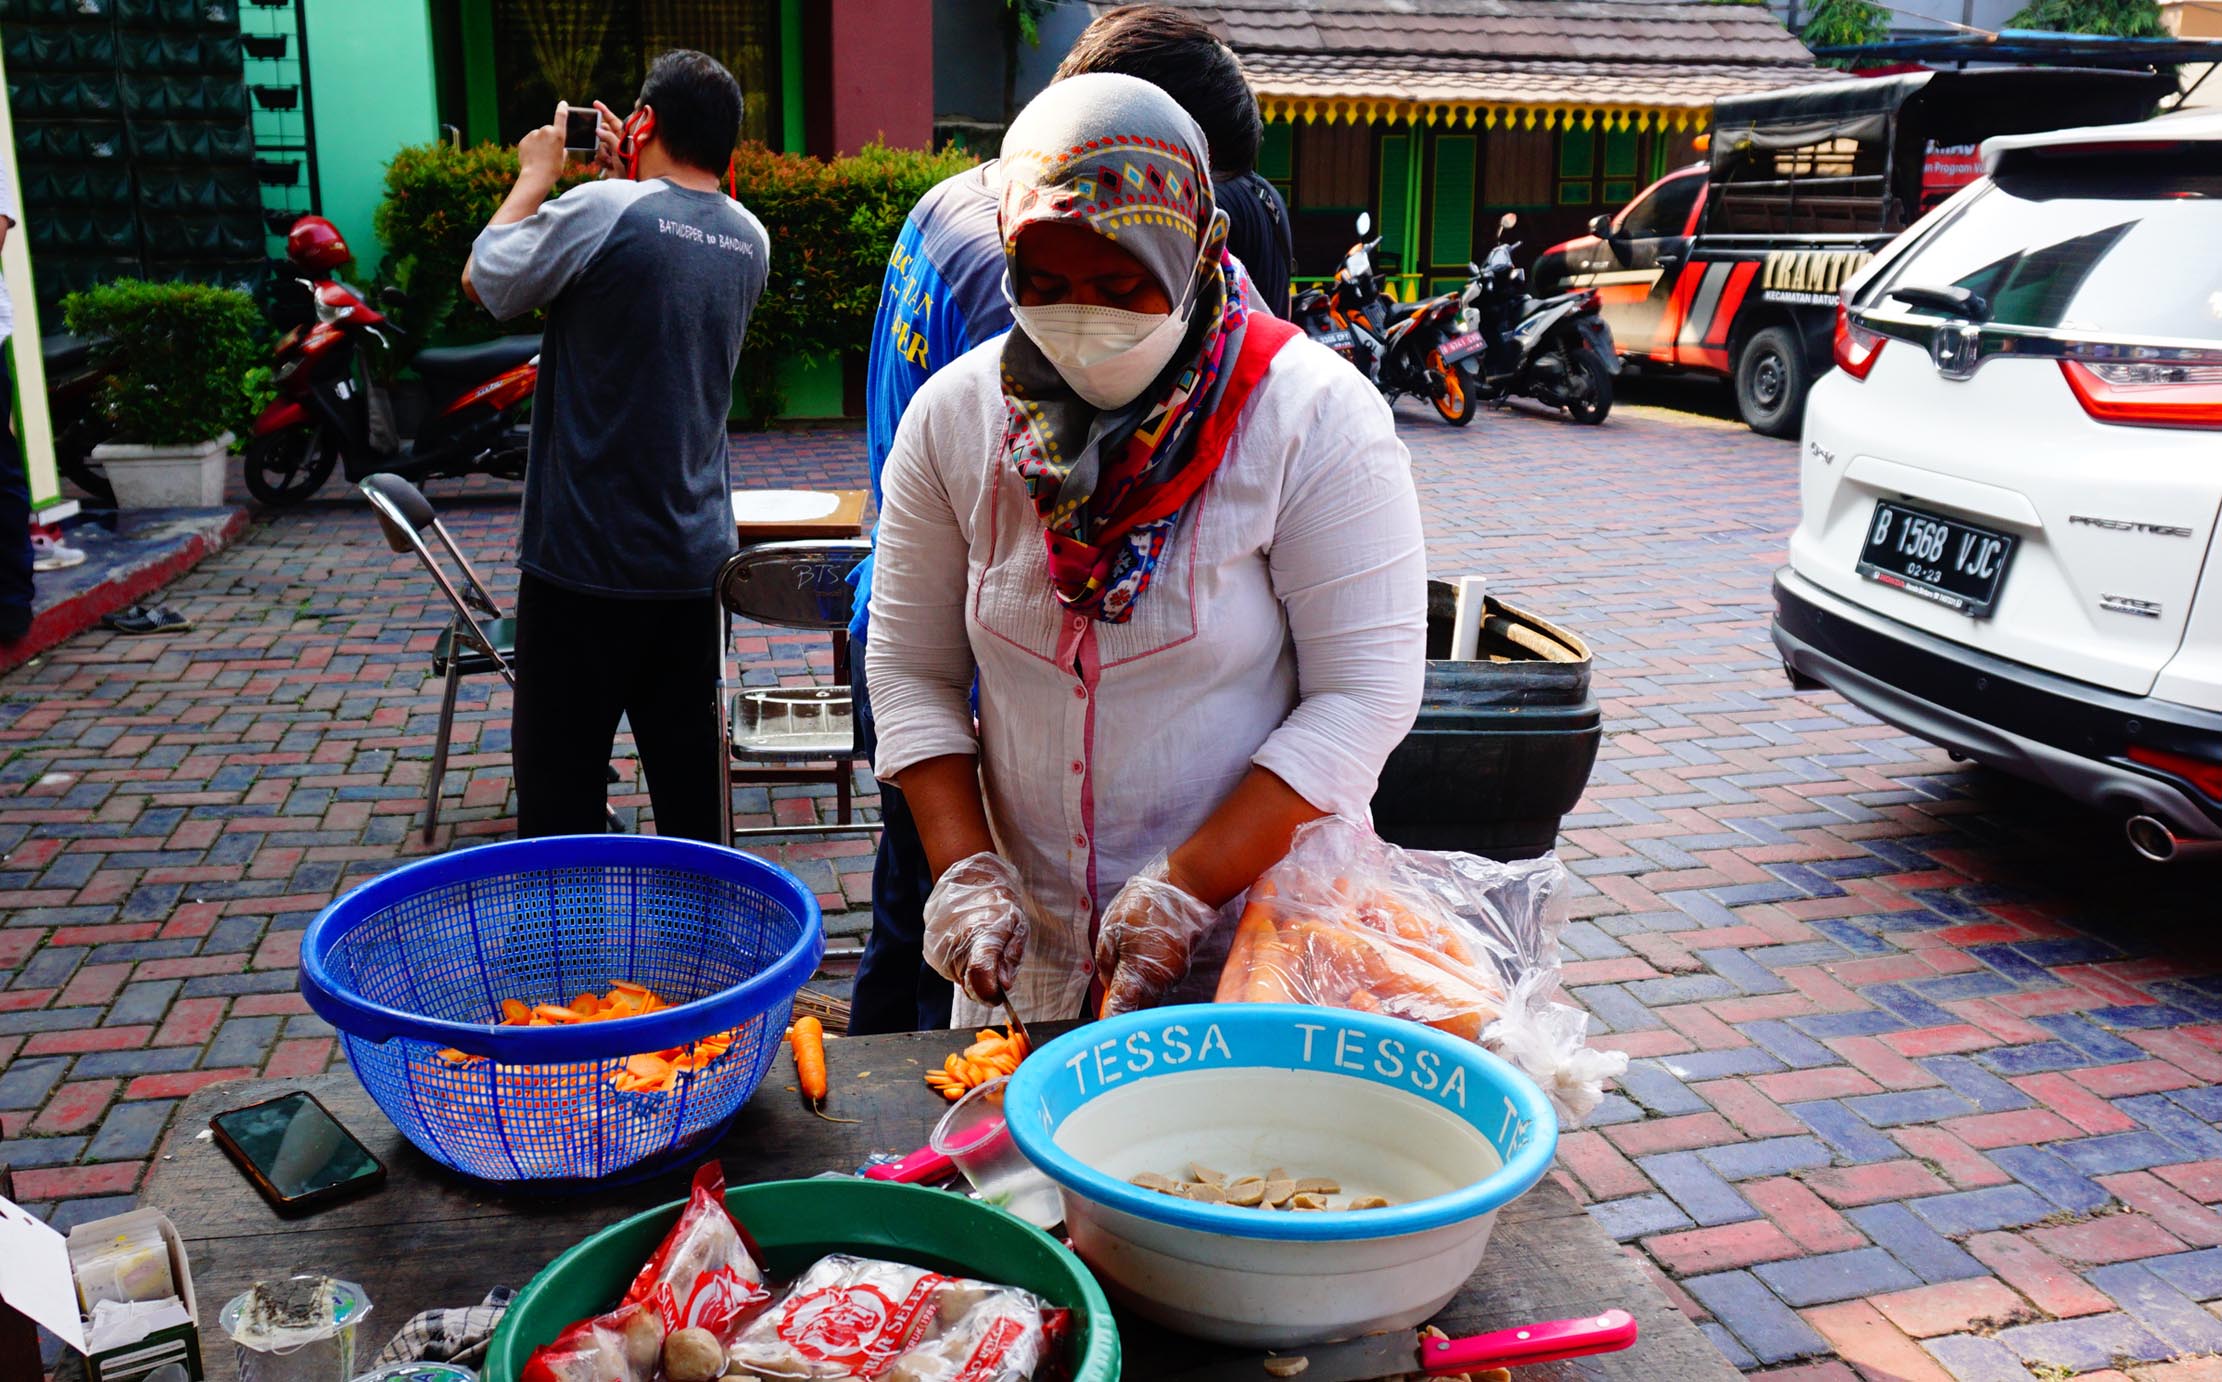 Sejumlah Pegawai Kecamatan Batuceper Kota Tangerang sedang menyiapkan dan memasak di Dapur umum  kecamatan dengan menerapkan Protokol Kesehatan yang ketat, kegiatan tersebut guna meringankan masyarakat yang sedang menjalankan isolasi mandiri, Minggu 18 Juli 2021. Foto : Panji Asmoro/TrenAsia                               